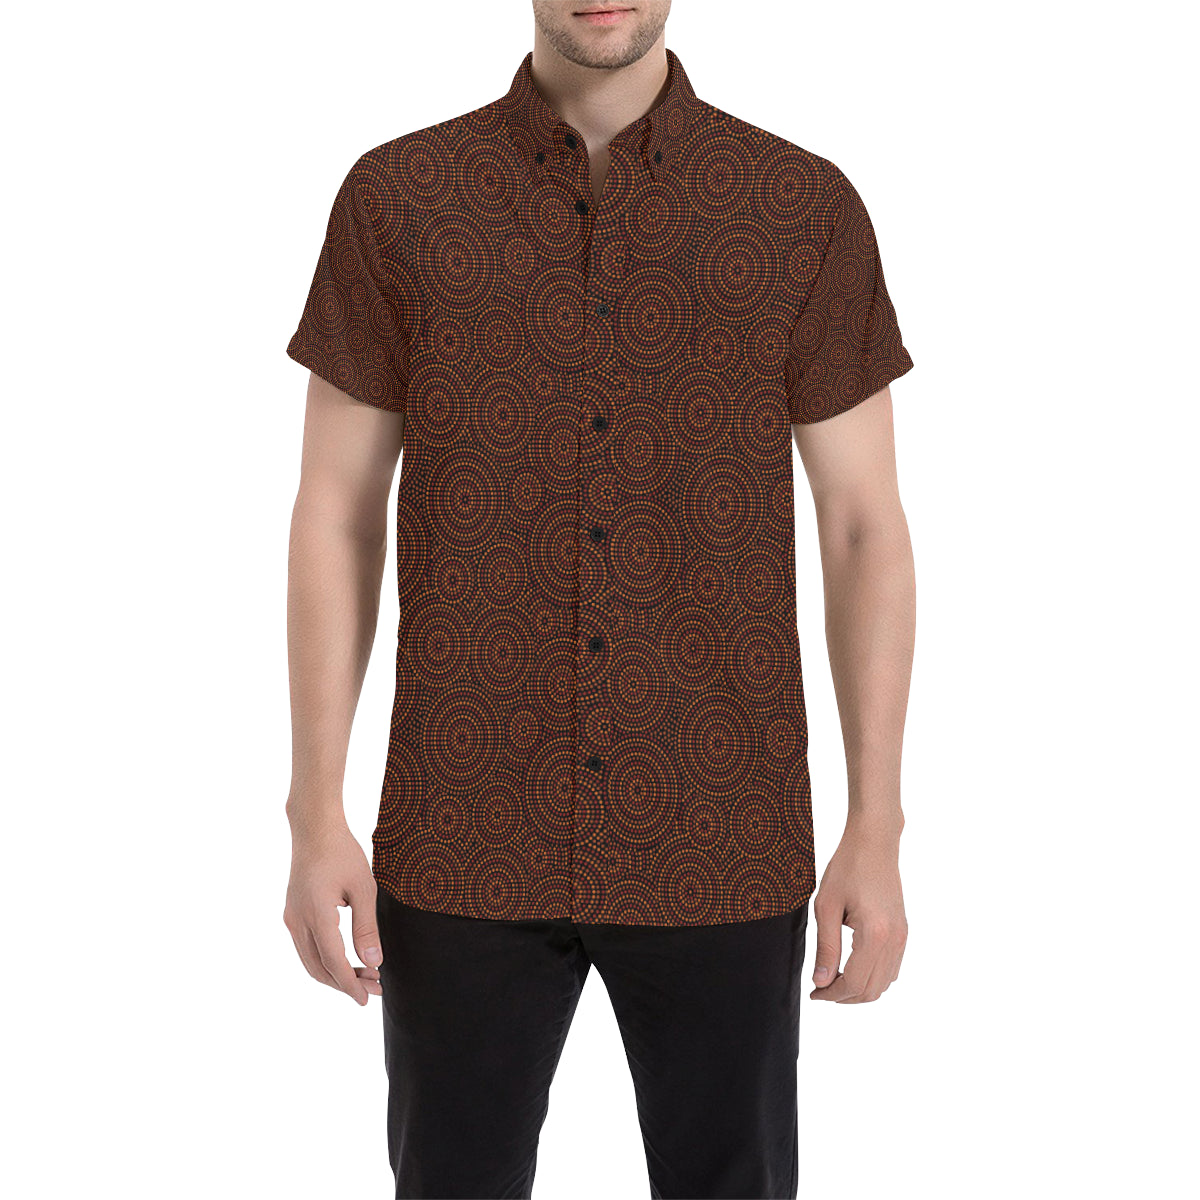 Aboriginal Pattern Print Design 02 Men's Short Sleeve Button Up Shirt